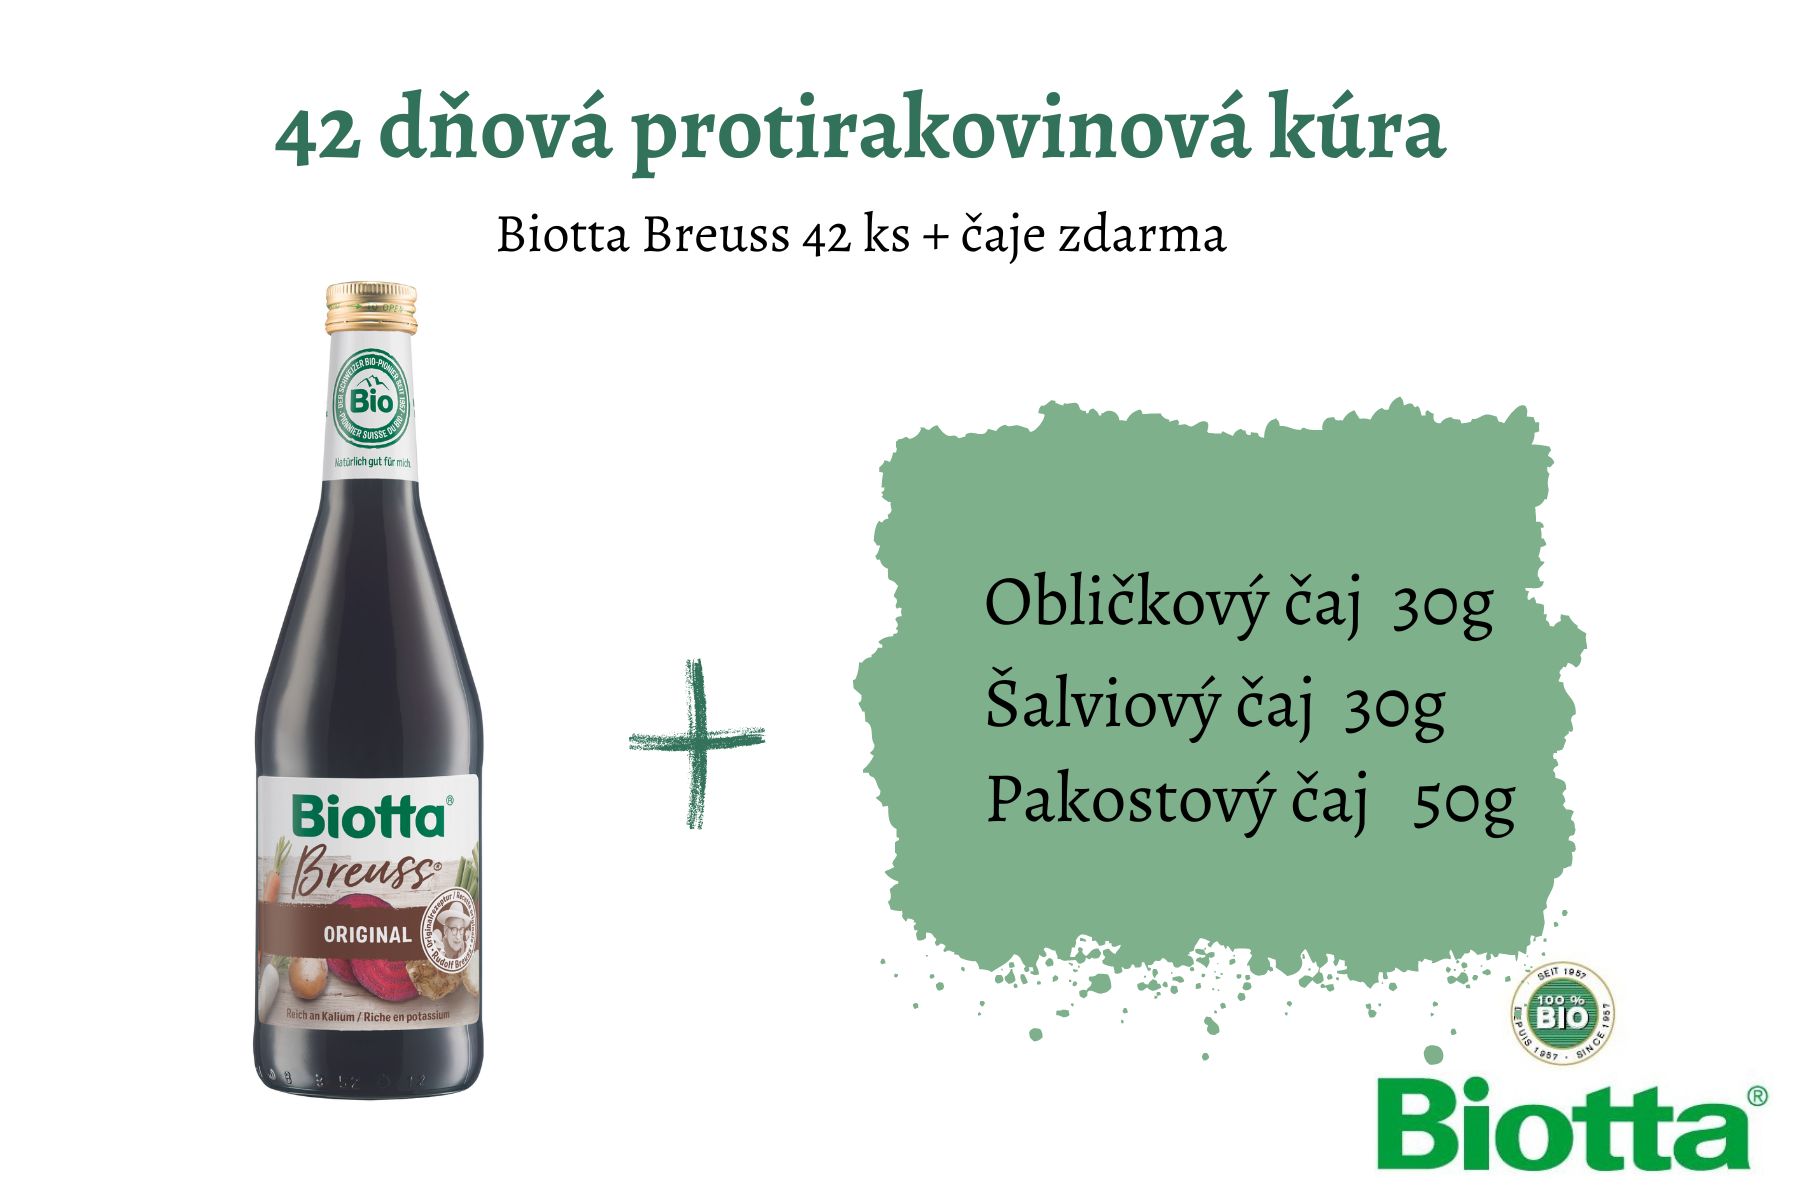 Biotta Breuss 42 ks + čaje zdarma - cena za 1 ks 3,548€ 